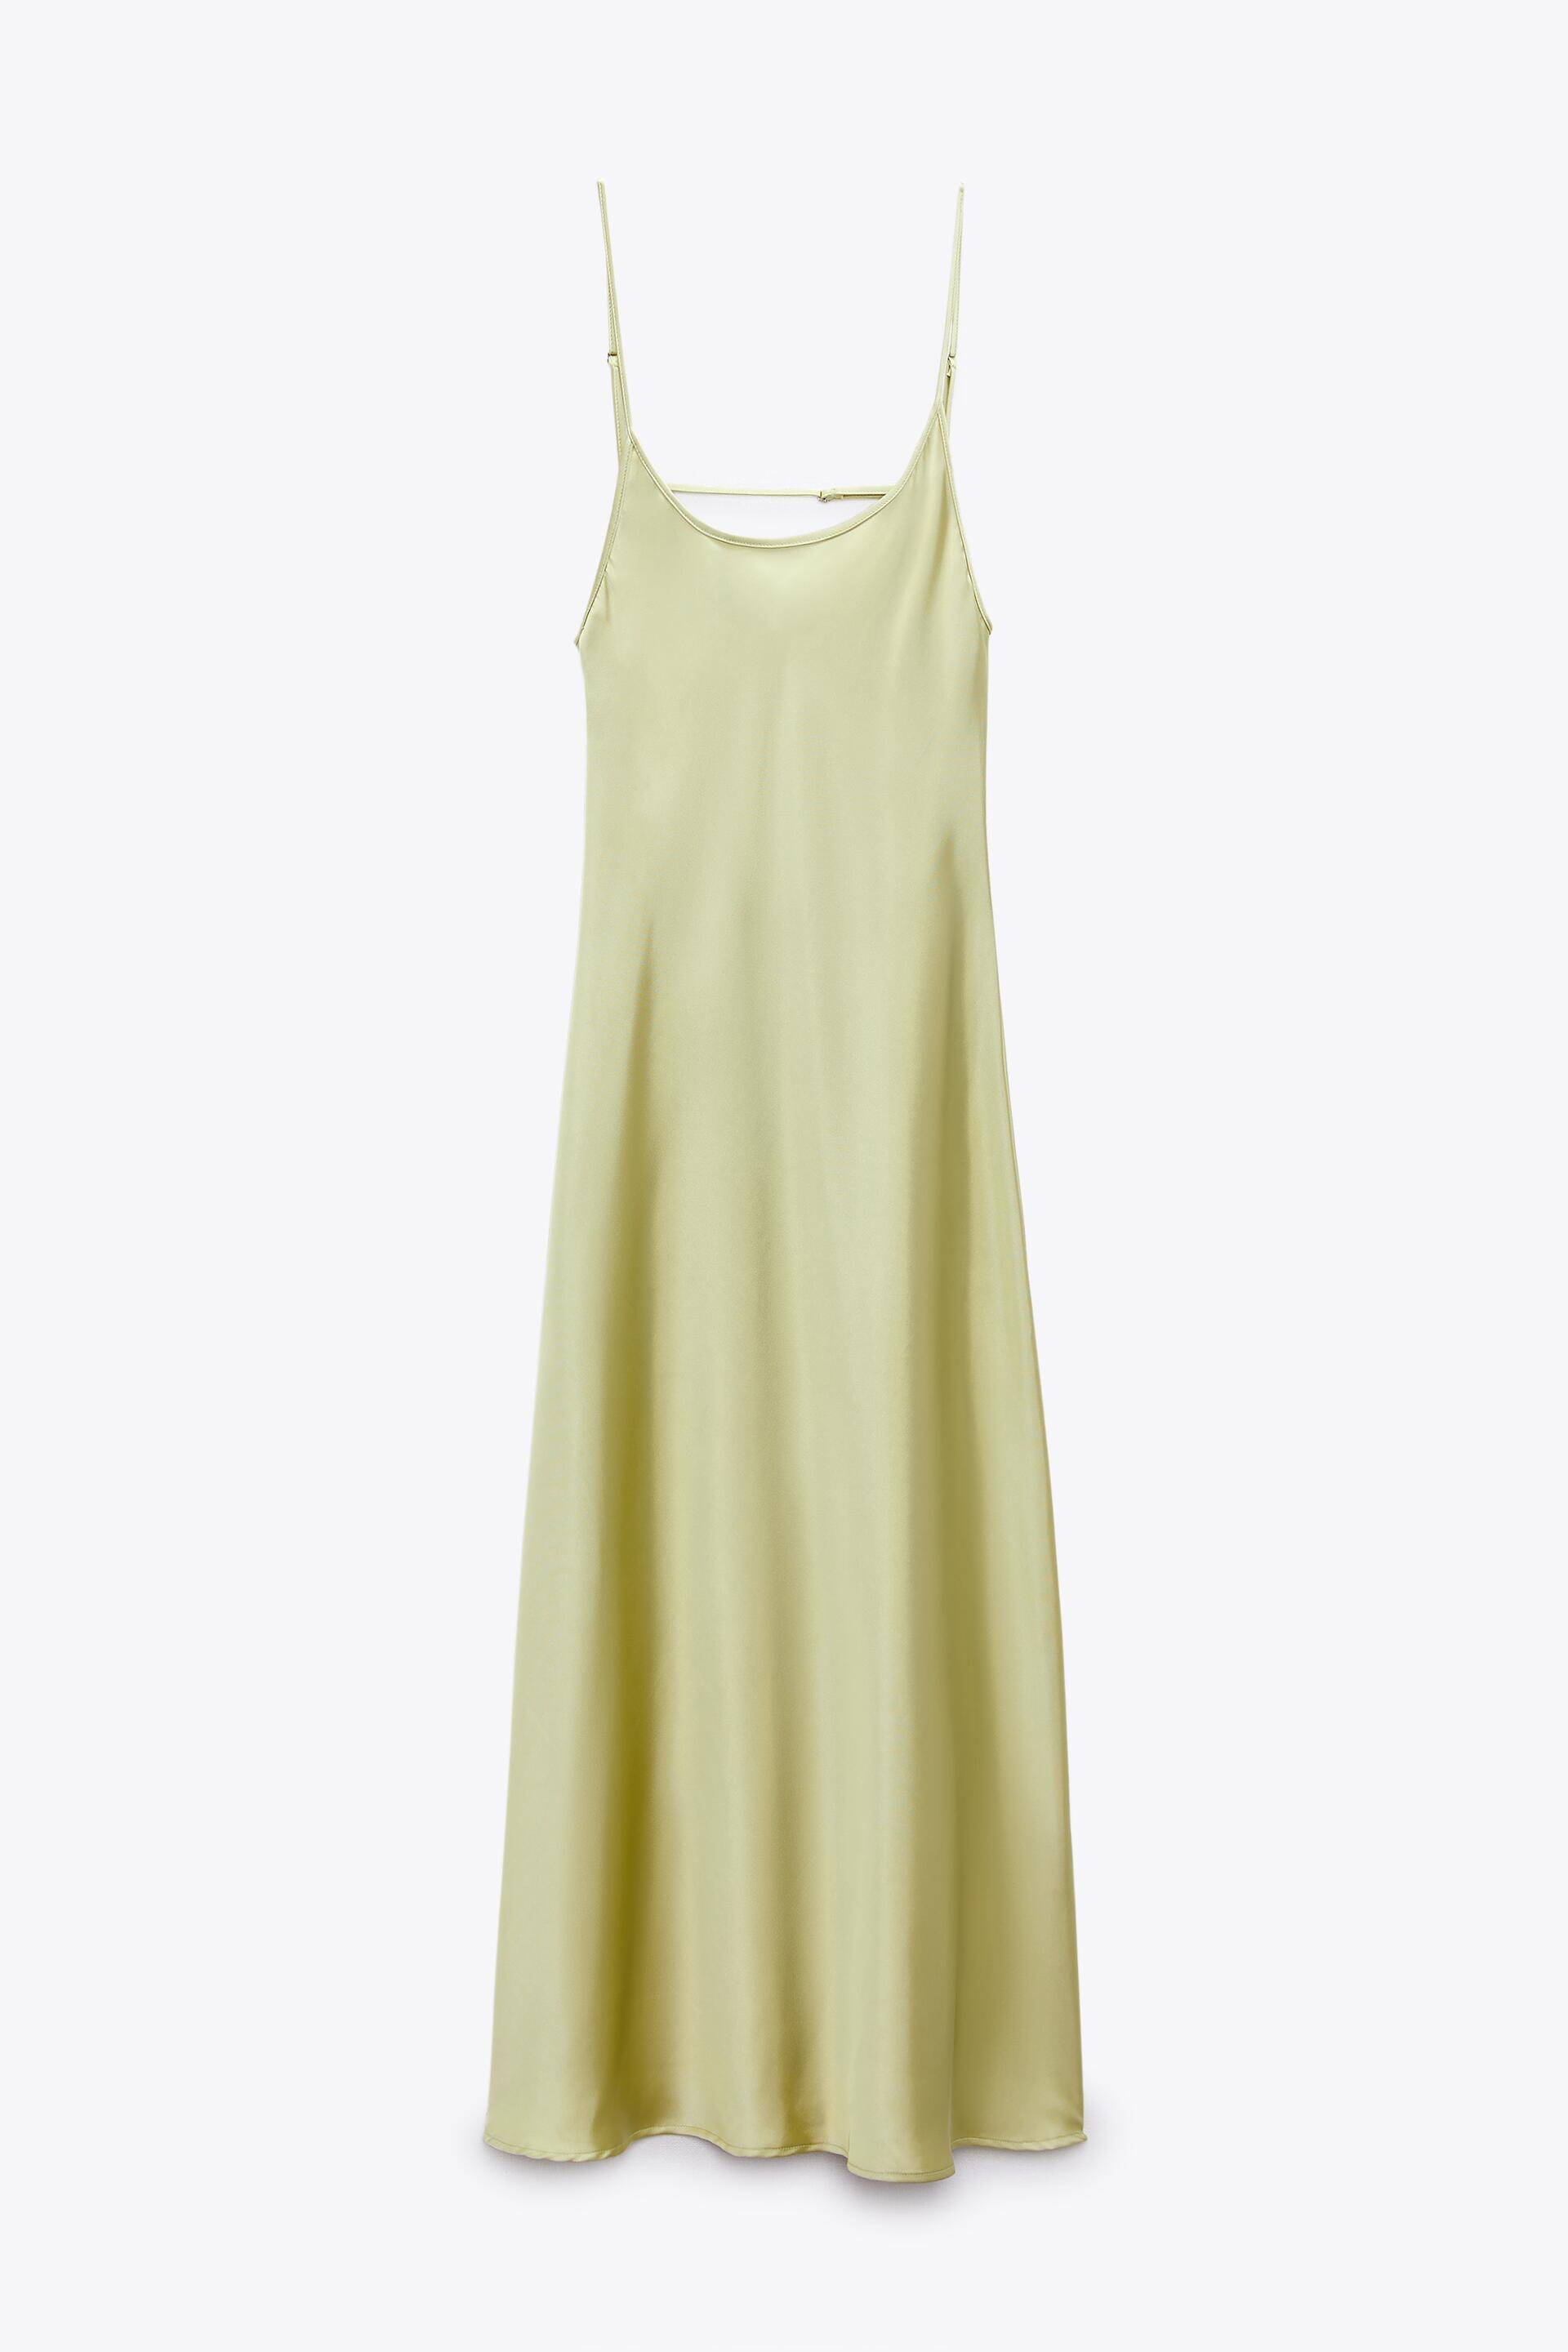 Платье женское ZARA 07102345 зеленое M (доставка из-за рубежа)